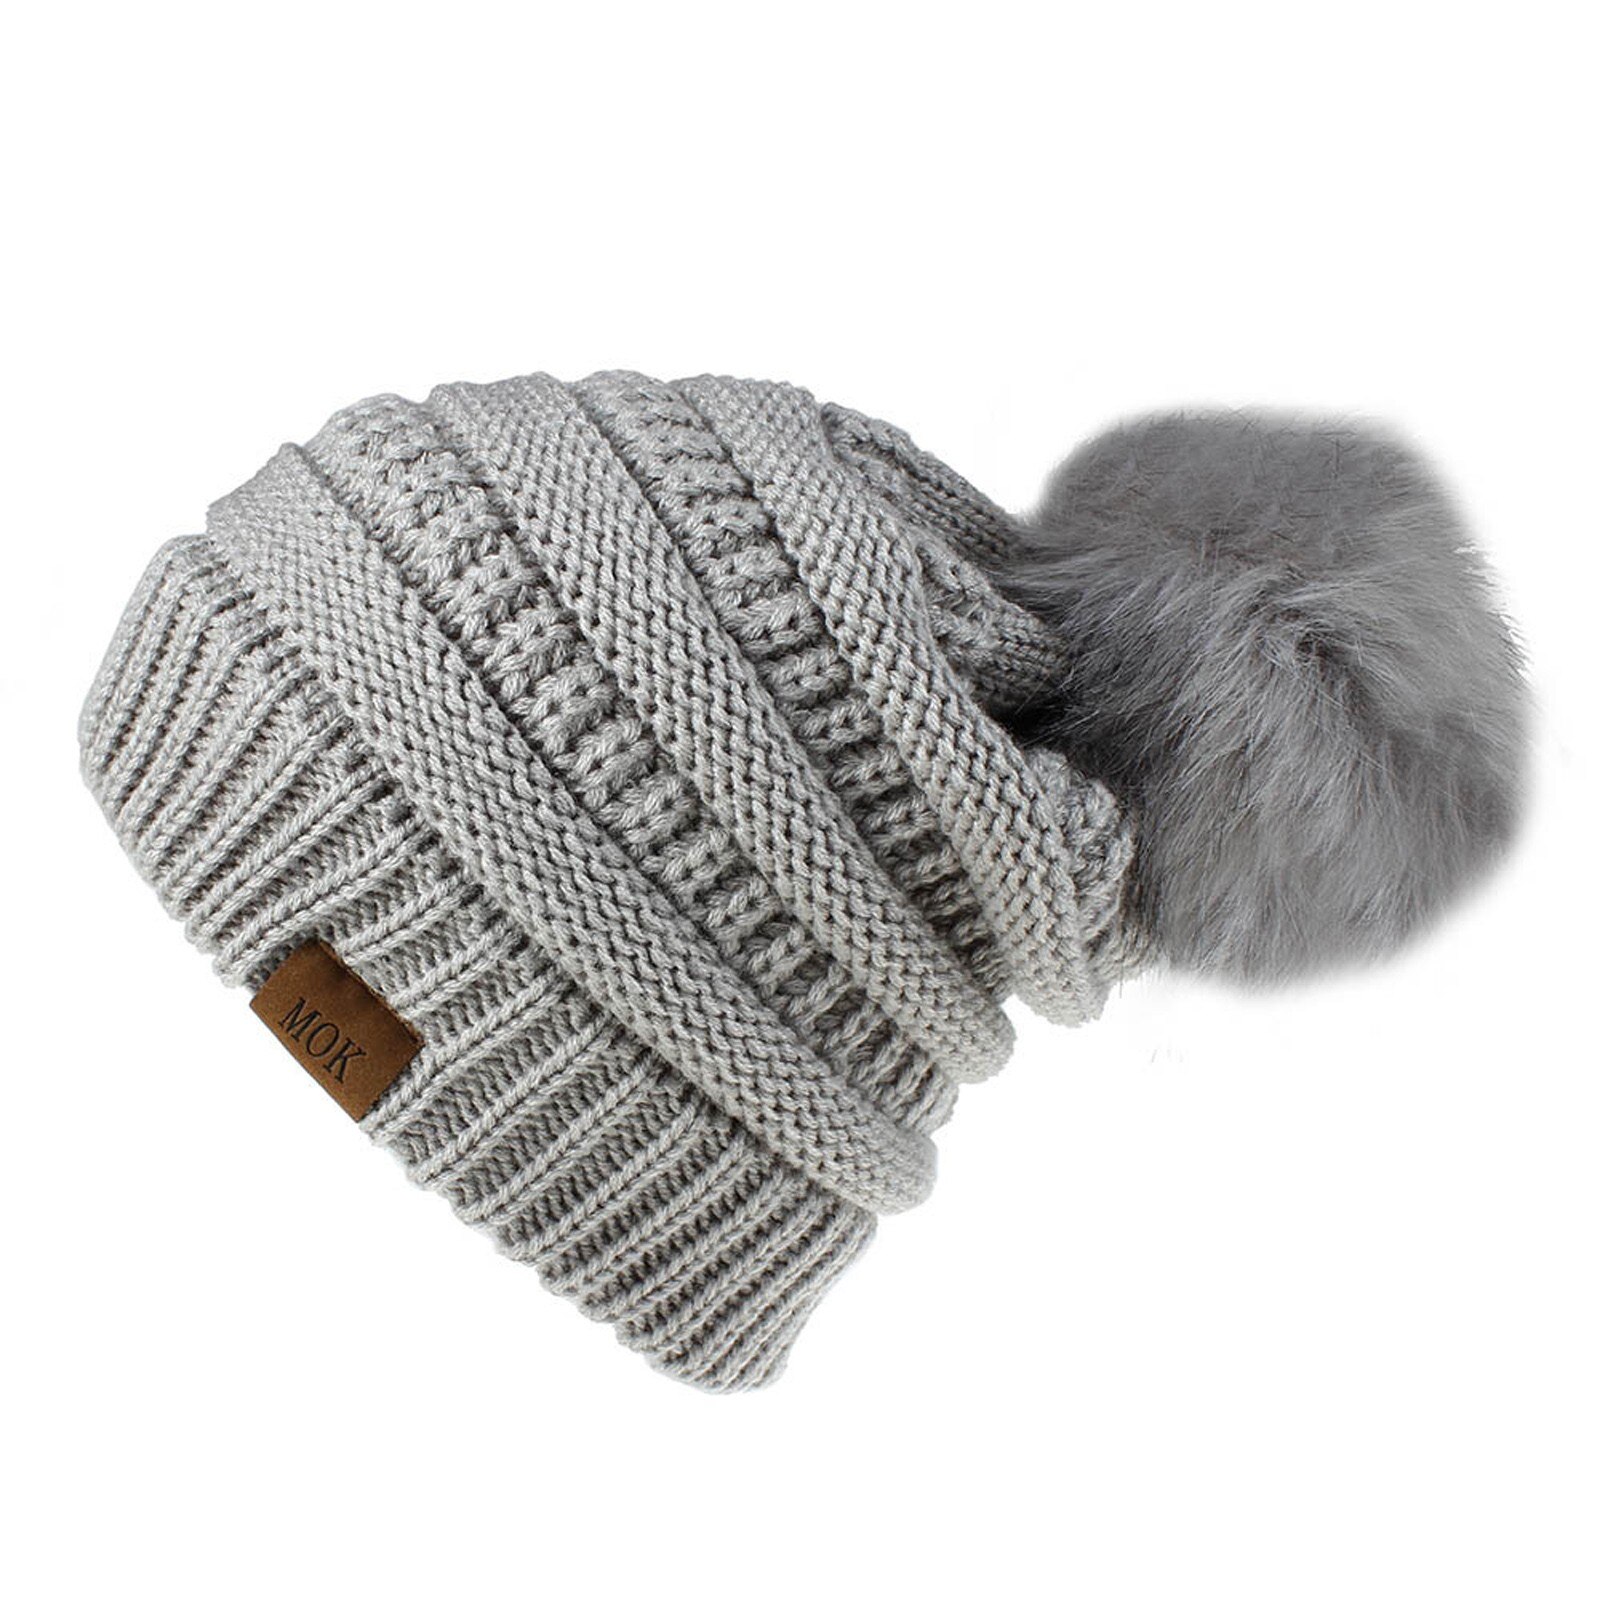 E la moda donna nuova E di alta qualità mantiene caldi cappelli invernali cappello a orlo in lana lavorato a maglia morbido delicato sulla pelle, traspirante: GY